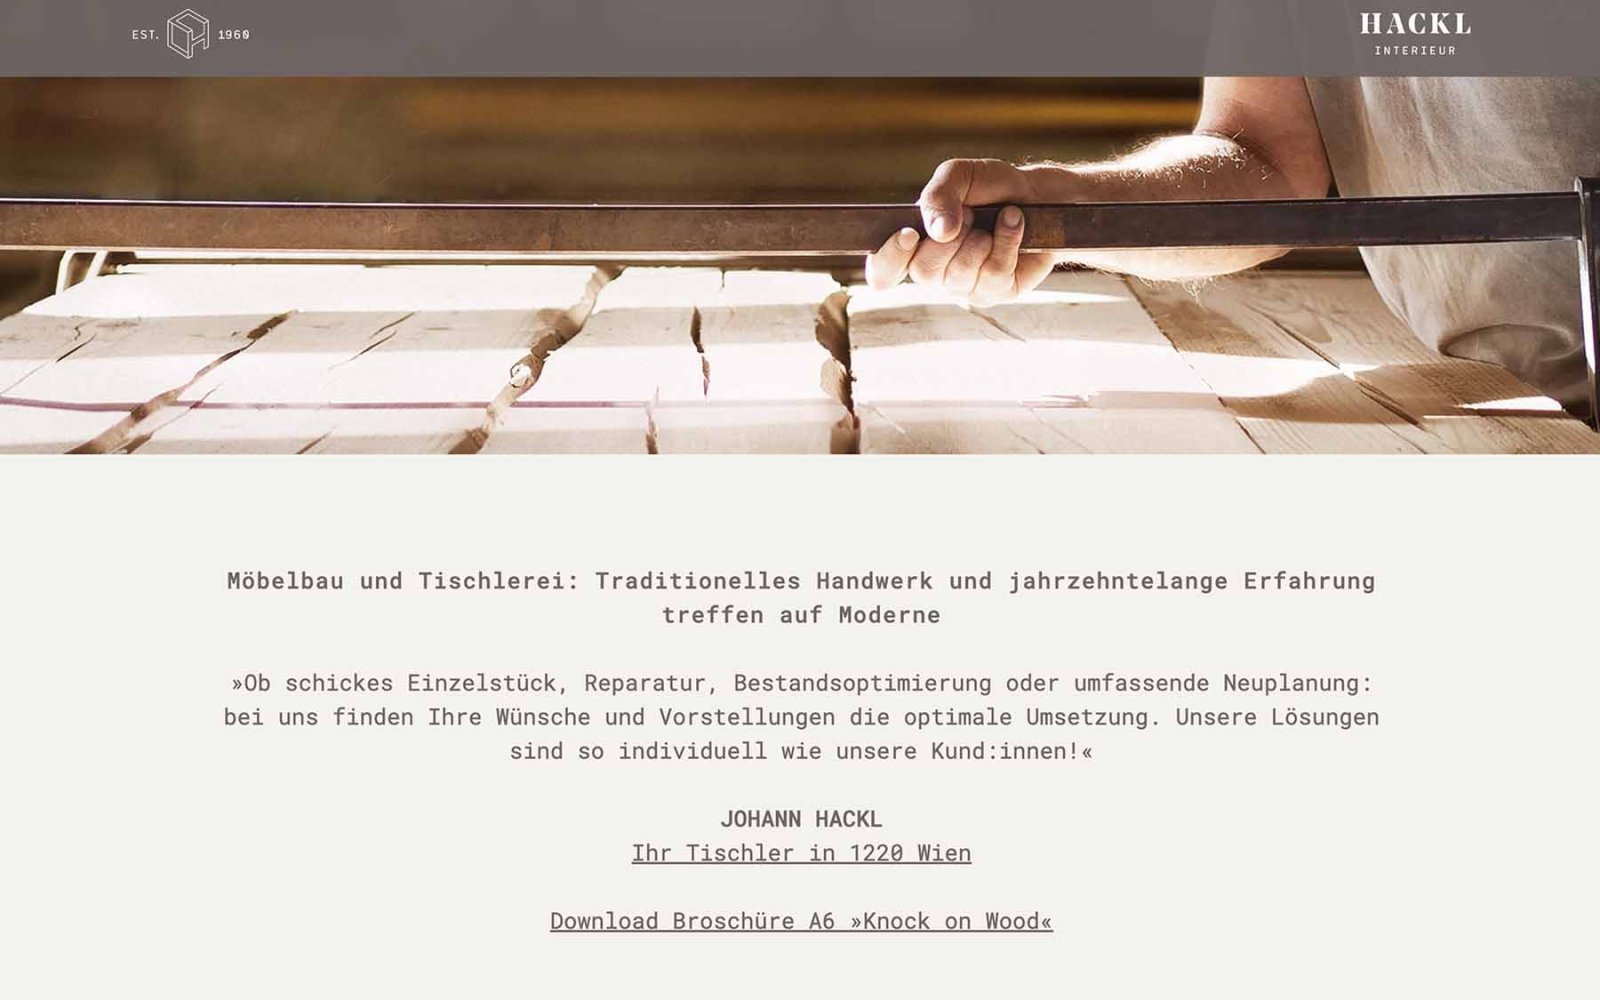 Website-Startseite Hackl Interieur Scrolldown mit Infos über Möbelbau und Tischlerei